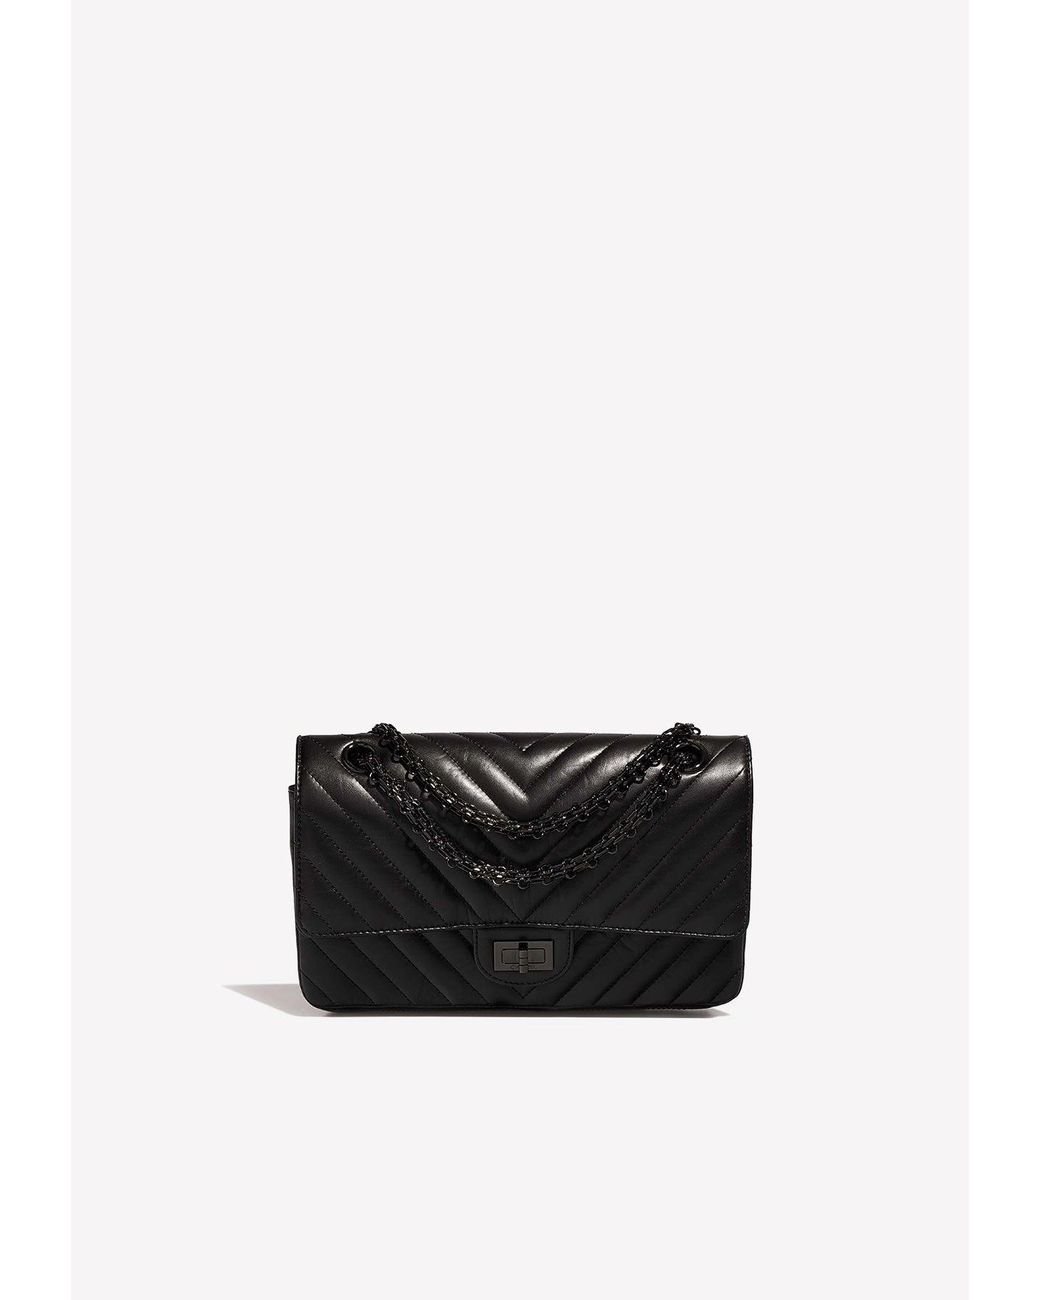 Black Chanel 2.55 small shoulder bag